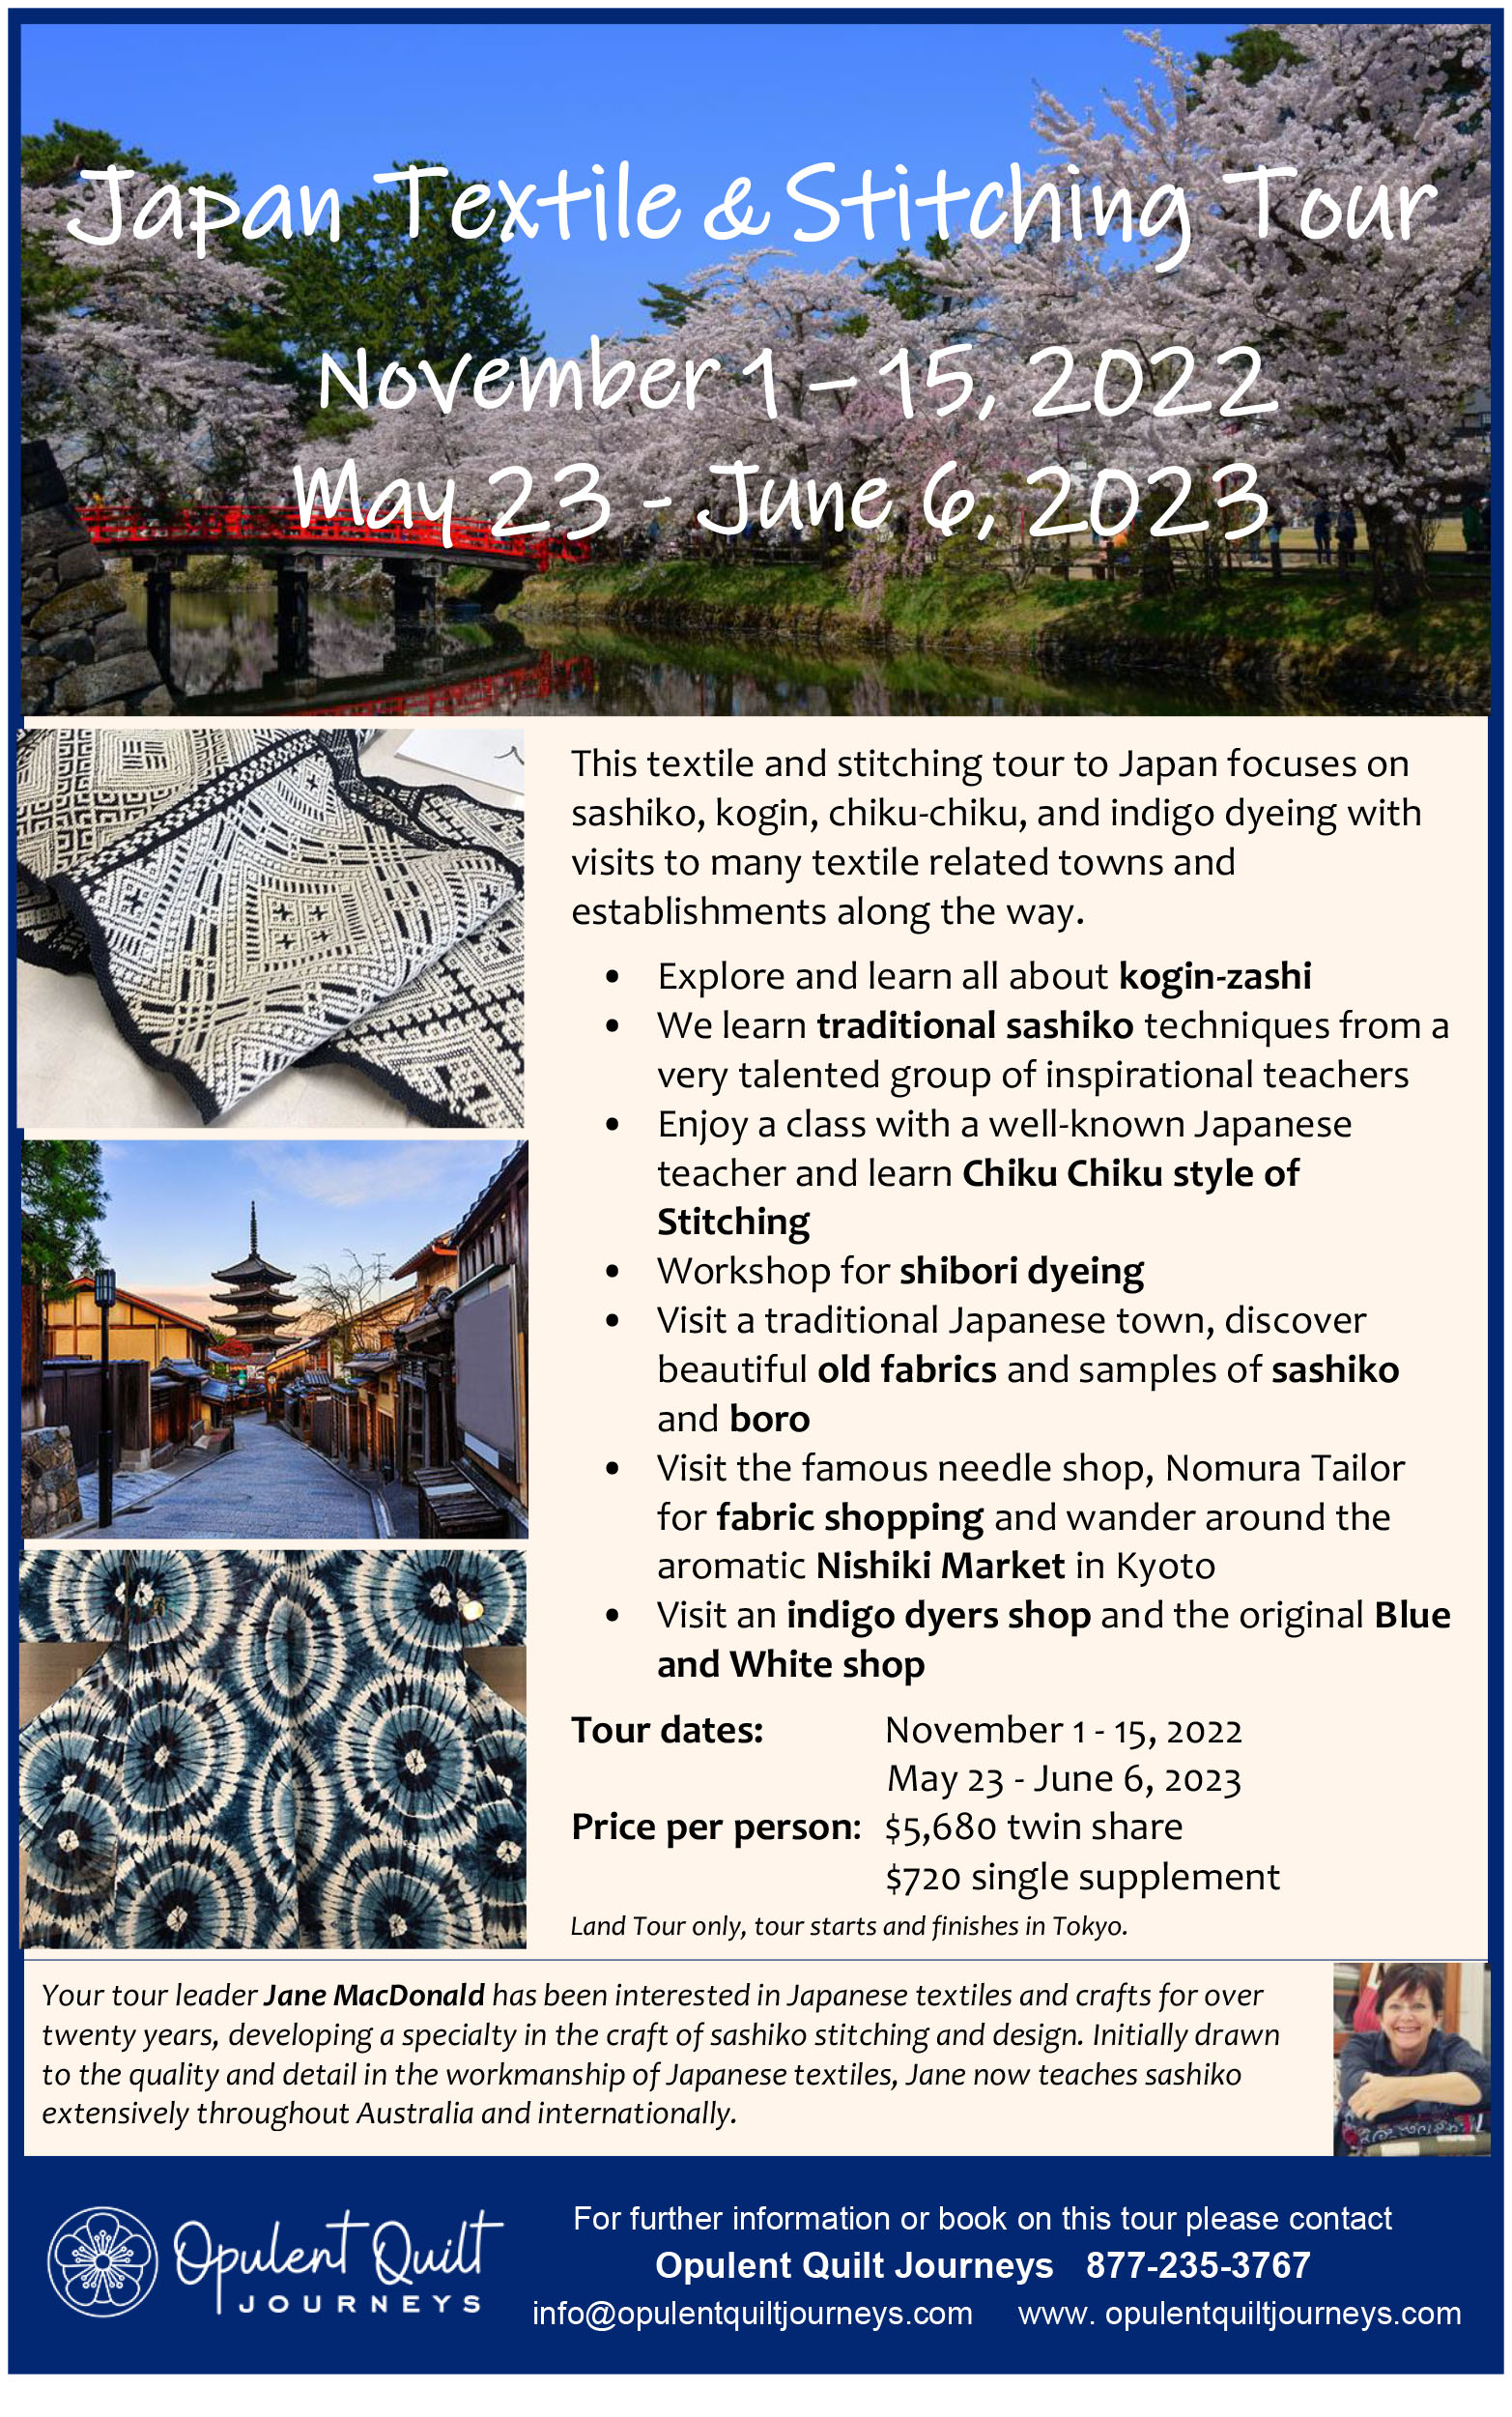 Japan Textile Stitching Tour brochure